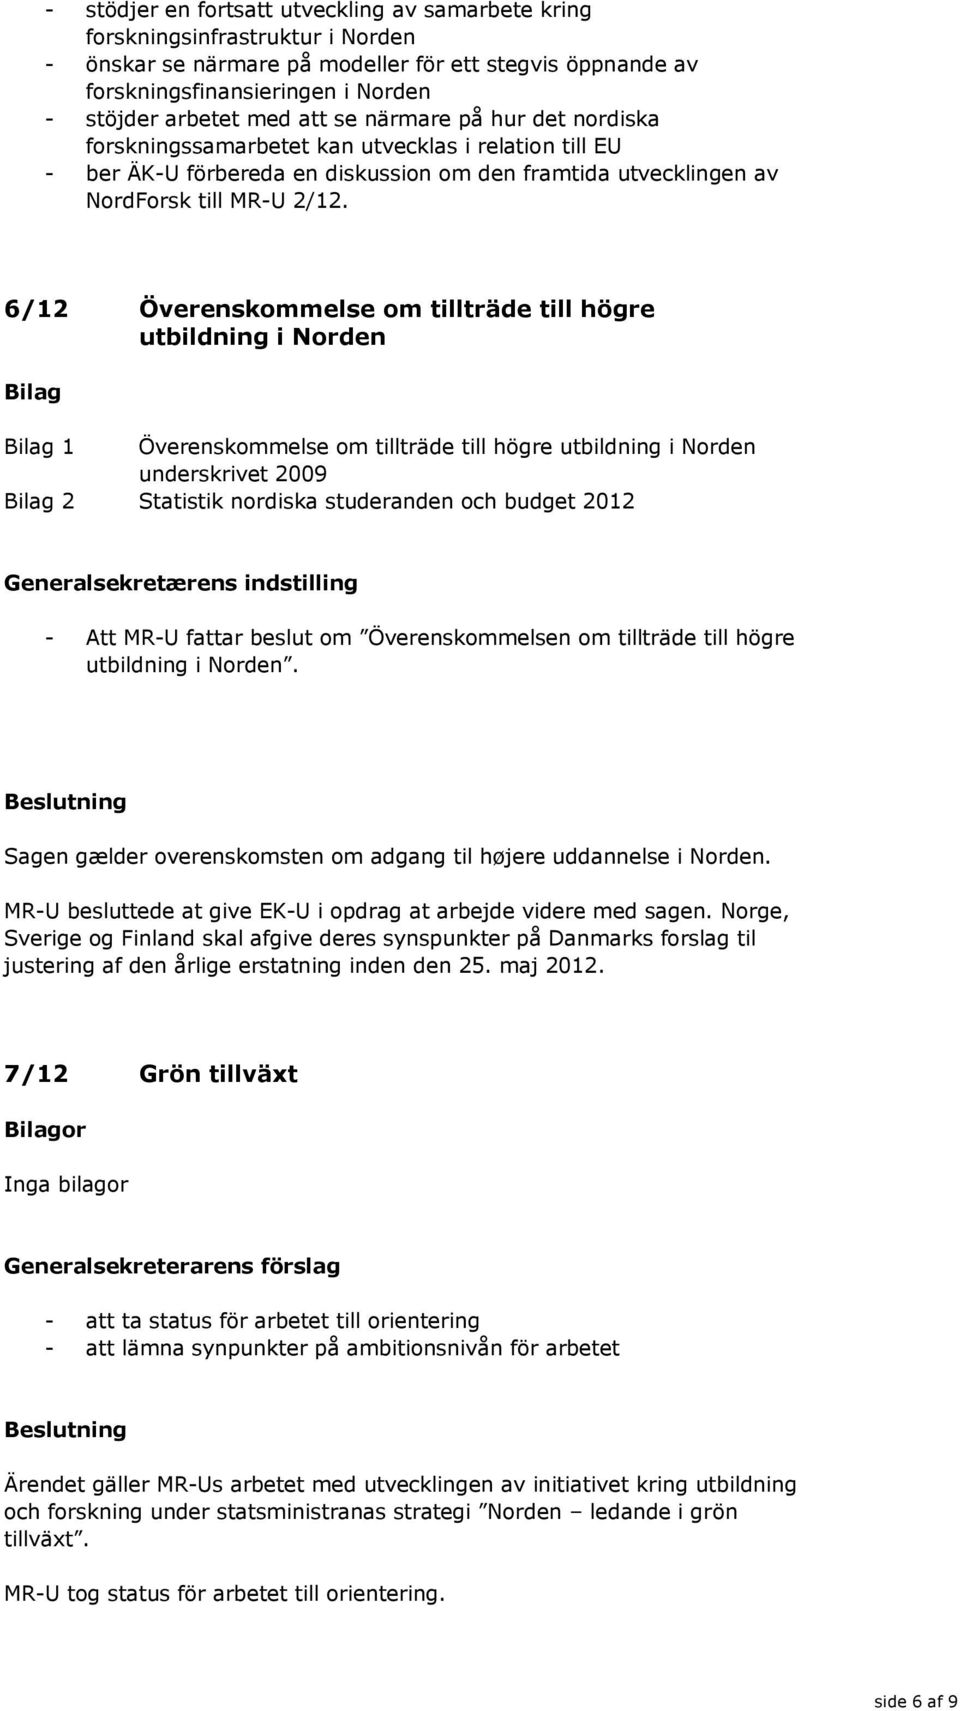 6/12 Överenskommelse om tillträde till högre utbildning i Norden 1 Överenskommelse om tillträde till högre utbildning i Norden underskrivet 2009 2 Statistik nordiska studeranden och budget 2012